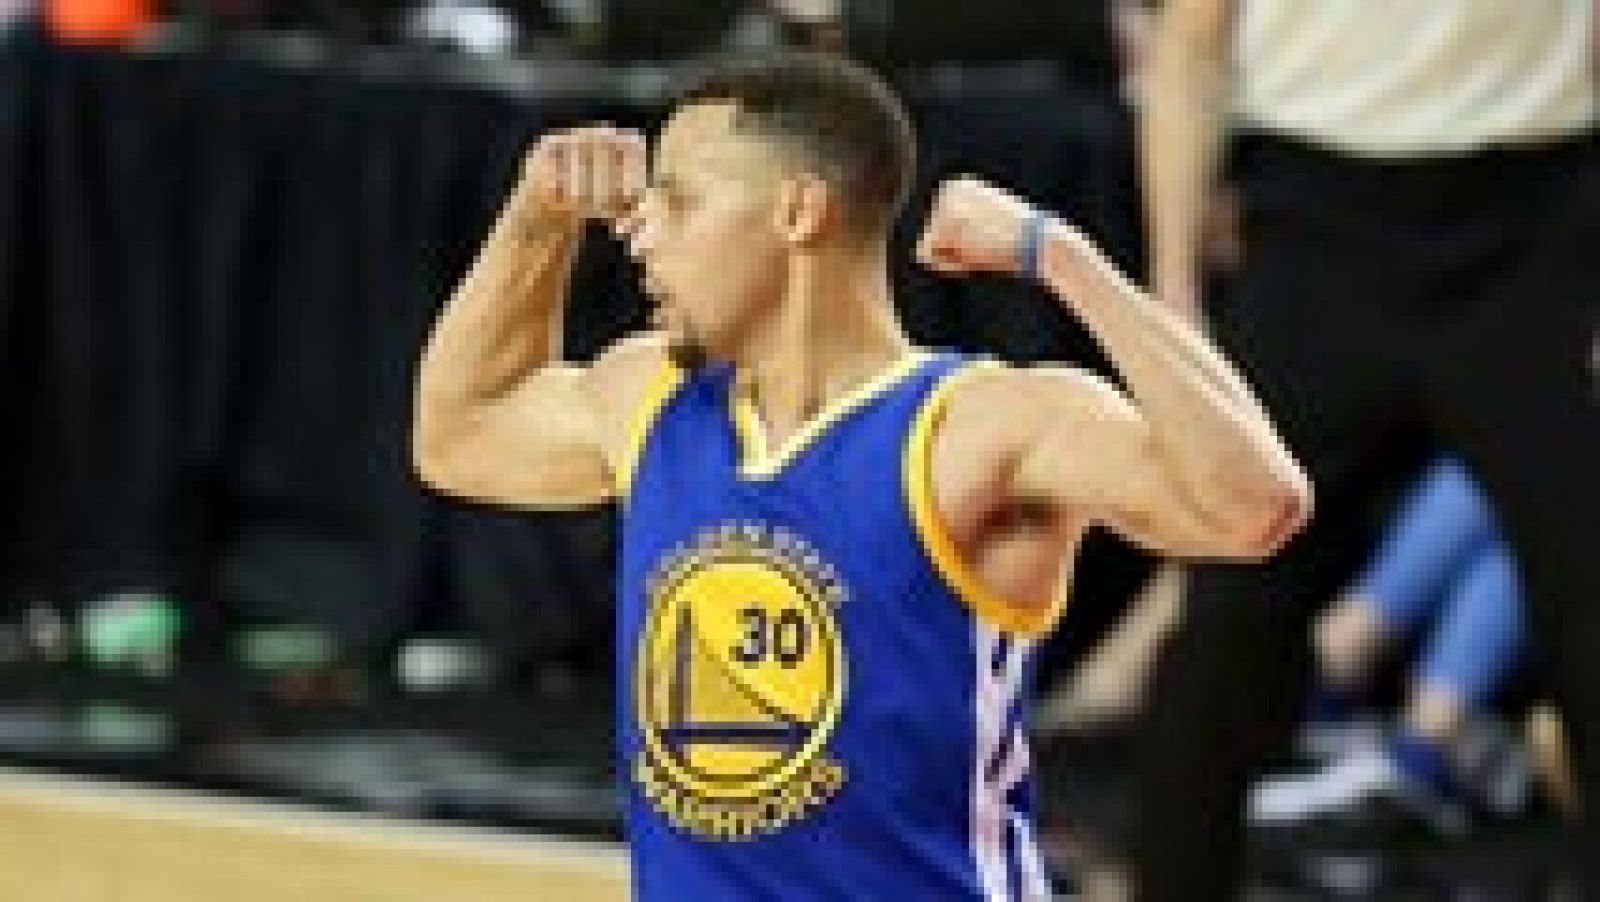 Curry acaba de volver de una lesión y ha vuelto a demostrar que es el mejor jugador de baloncesto del mundo ahora mismo. Después de varios partidos sin jugar, reapareció para batir un récord: 17 puntos en una prórroga y poner 3-1 la eliminatoria de los Warriors ante los Trail Blazers.